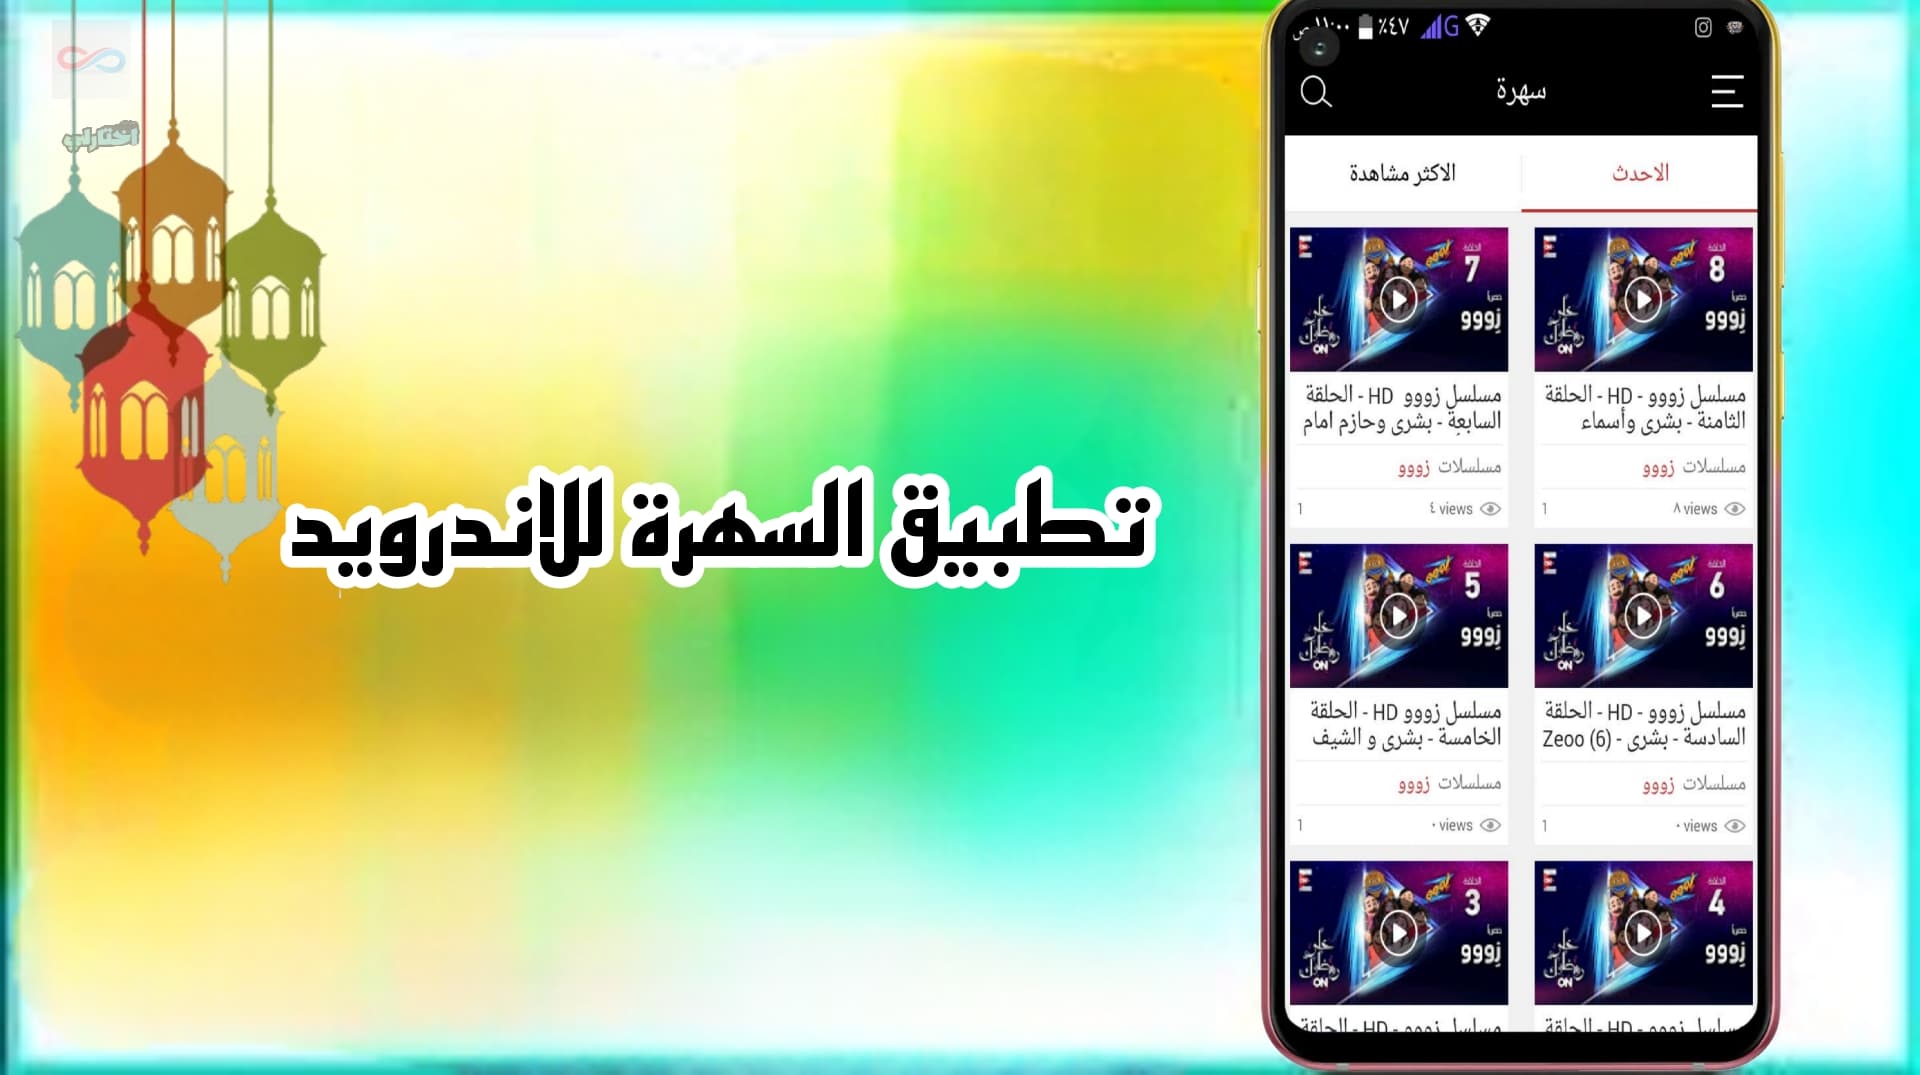 تنزيل تطبيق سهرة لمشاهدة مسلسلات رمضان مجانا